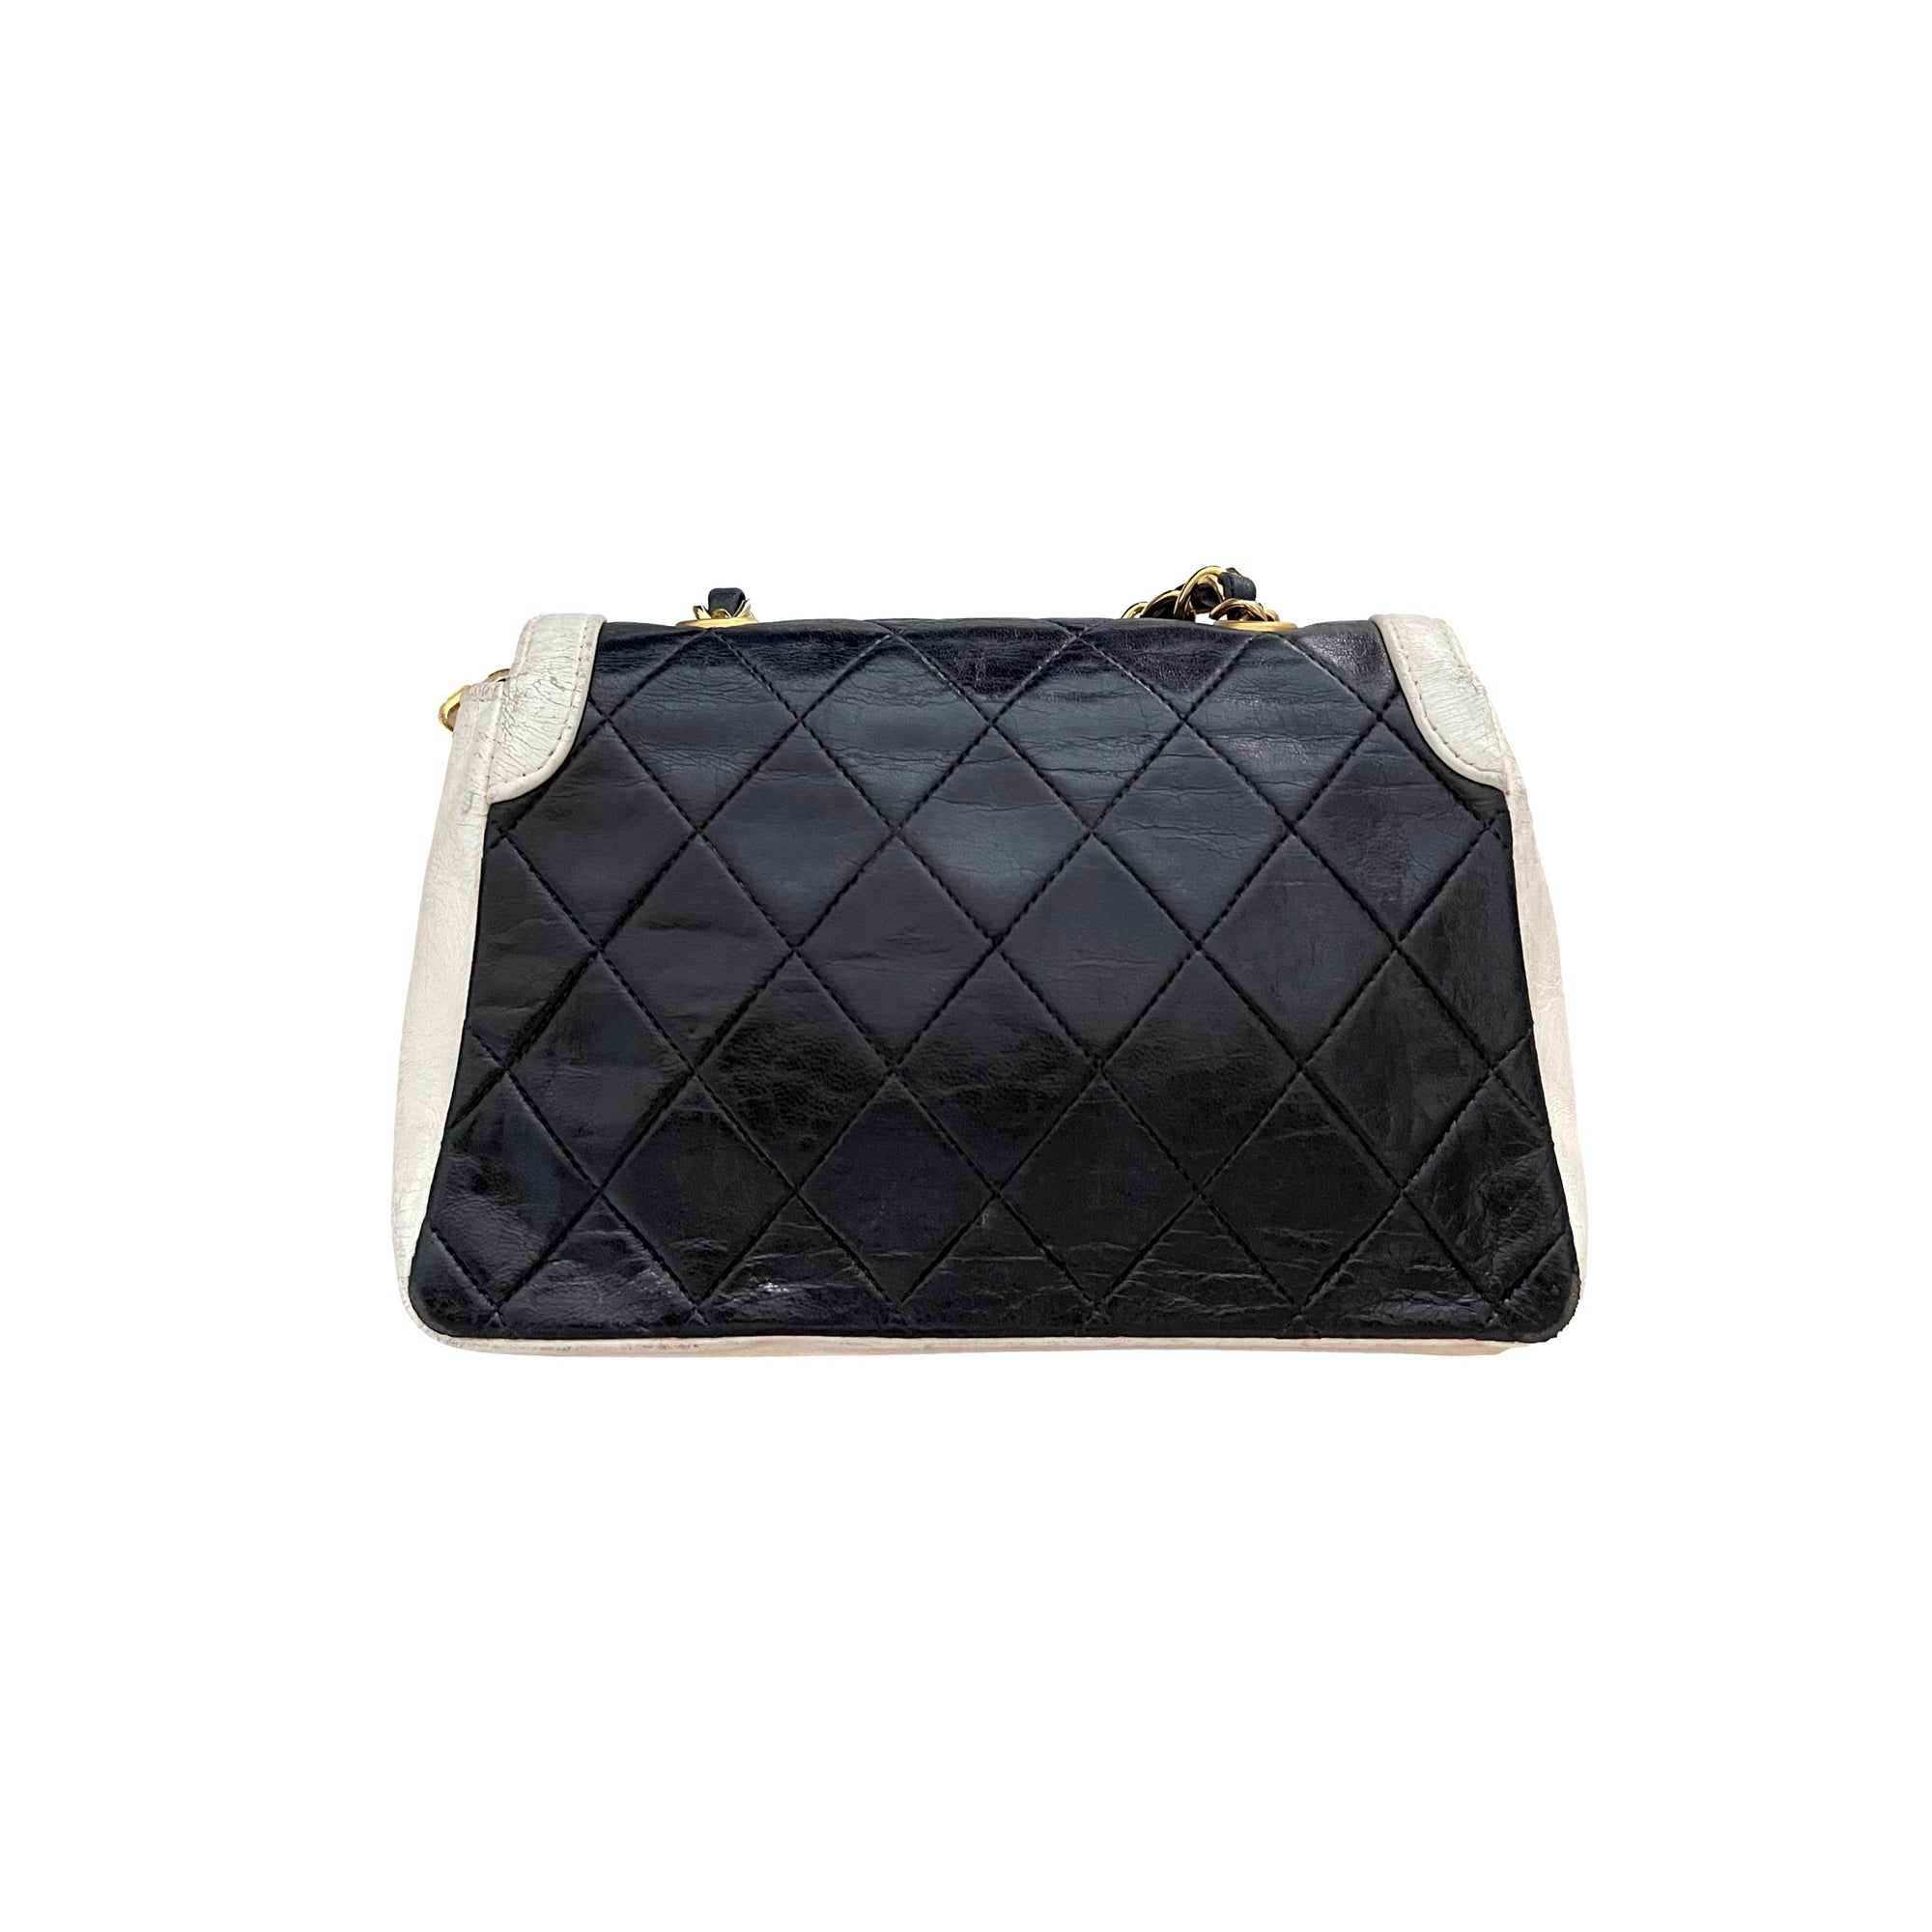 Chanel Two Tone Small Flap Bag - Handbags